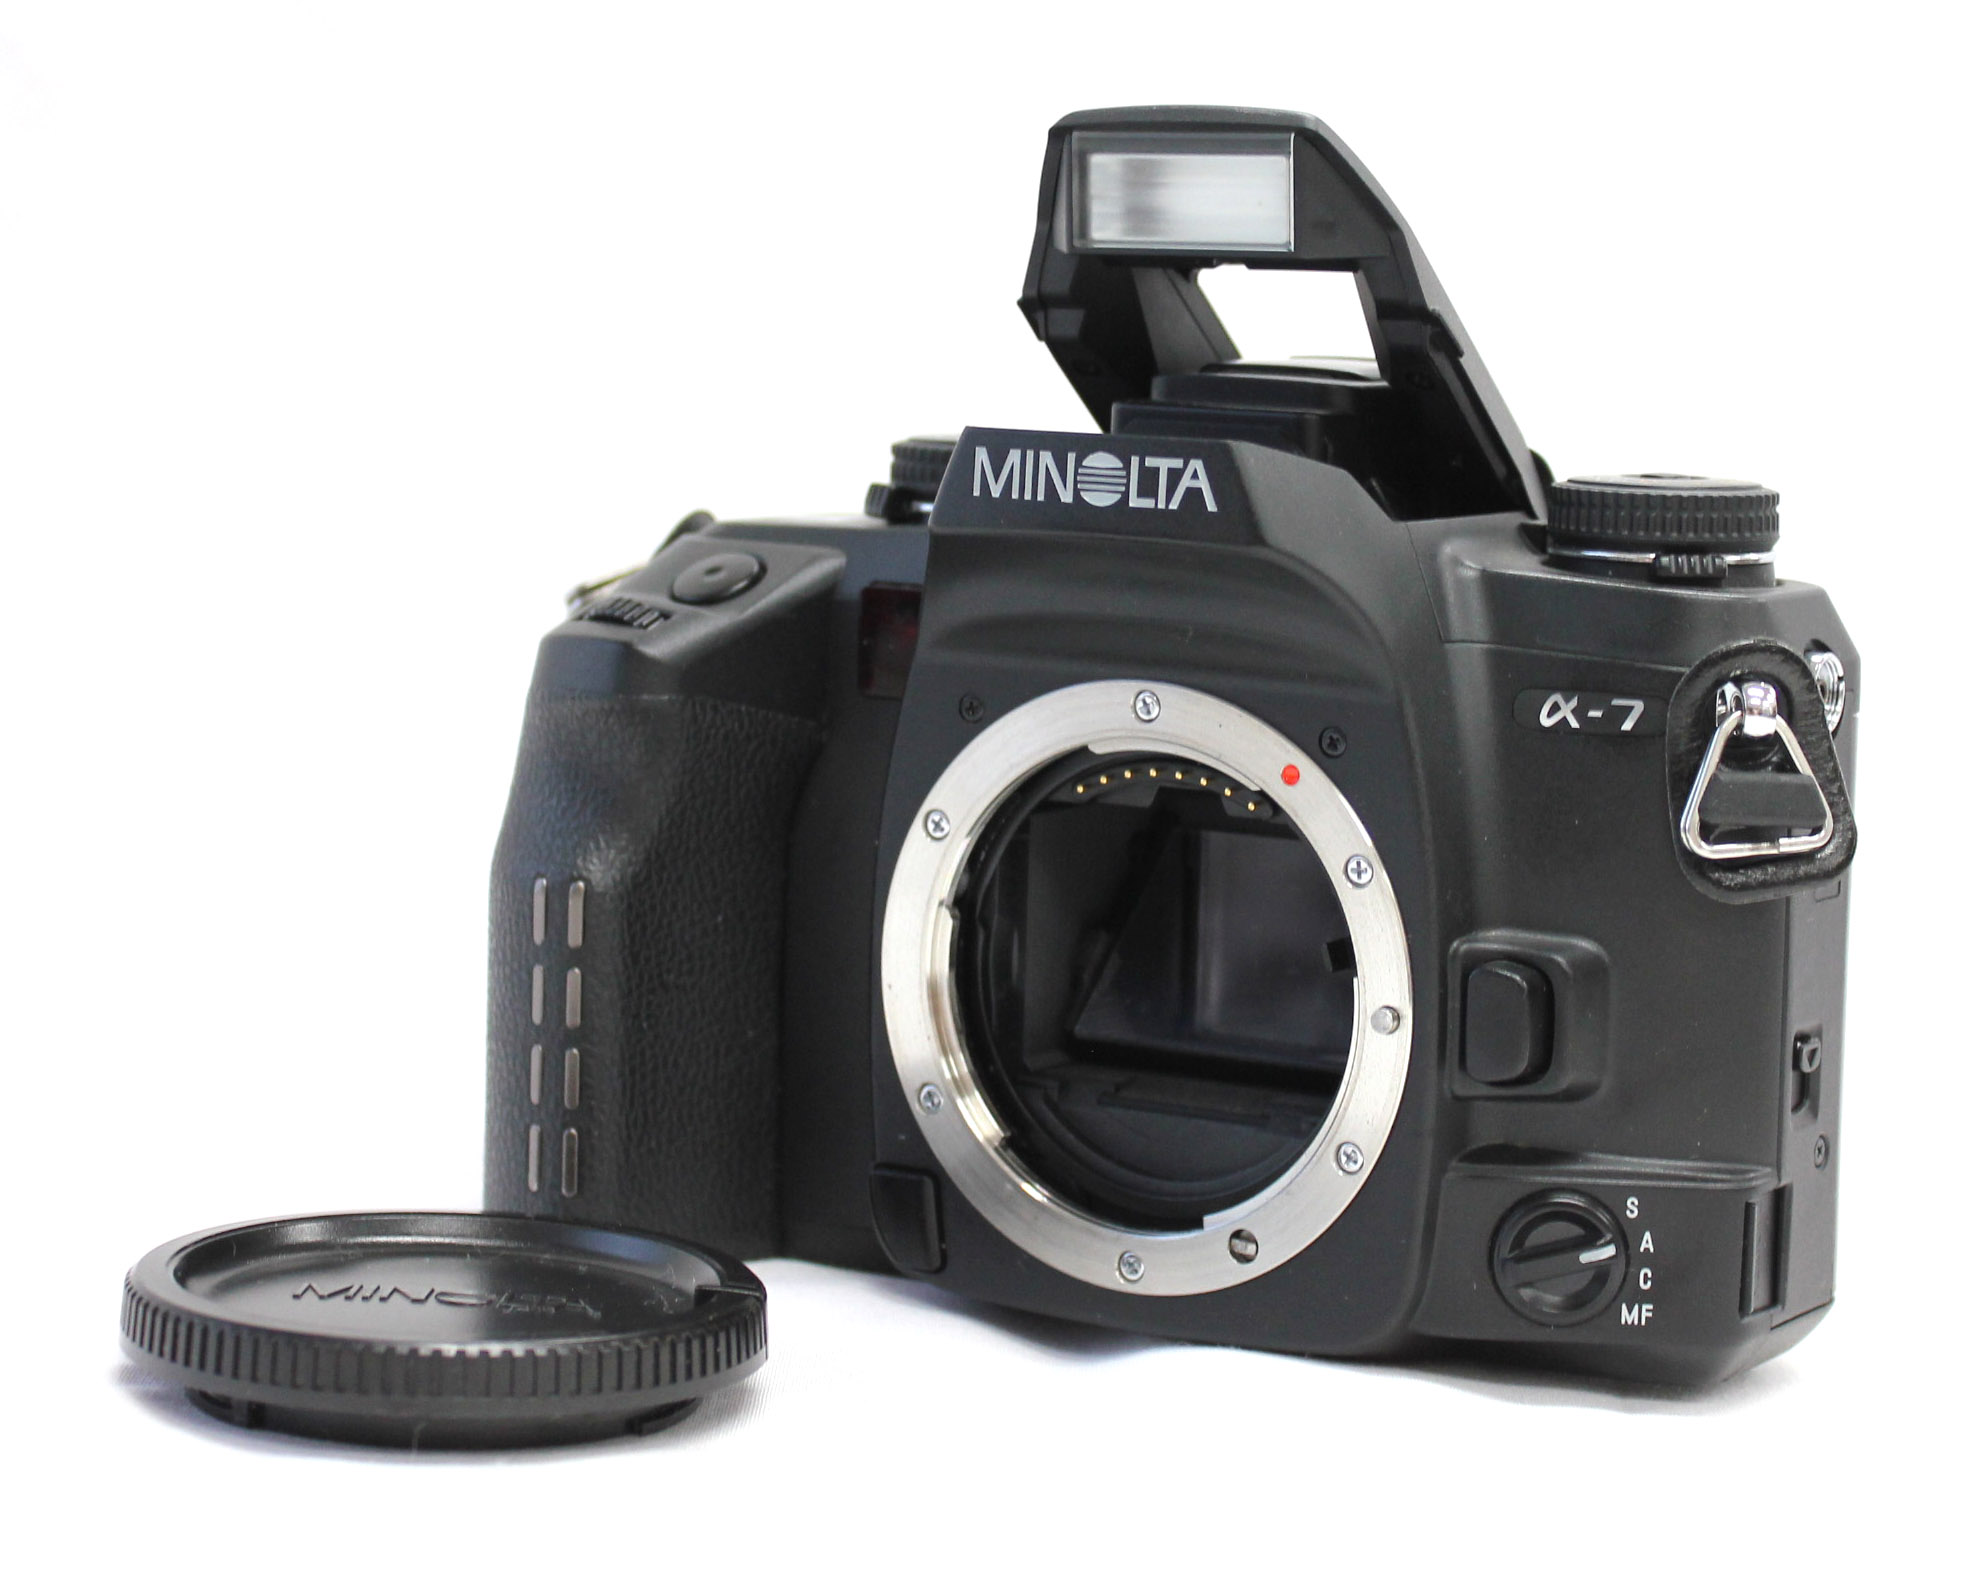 [Excellent+++++] Minolta Maxxum 7 Dynax 7 α-7 35mm SLR Film Camera Body from Japan